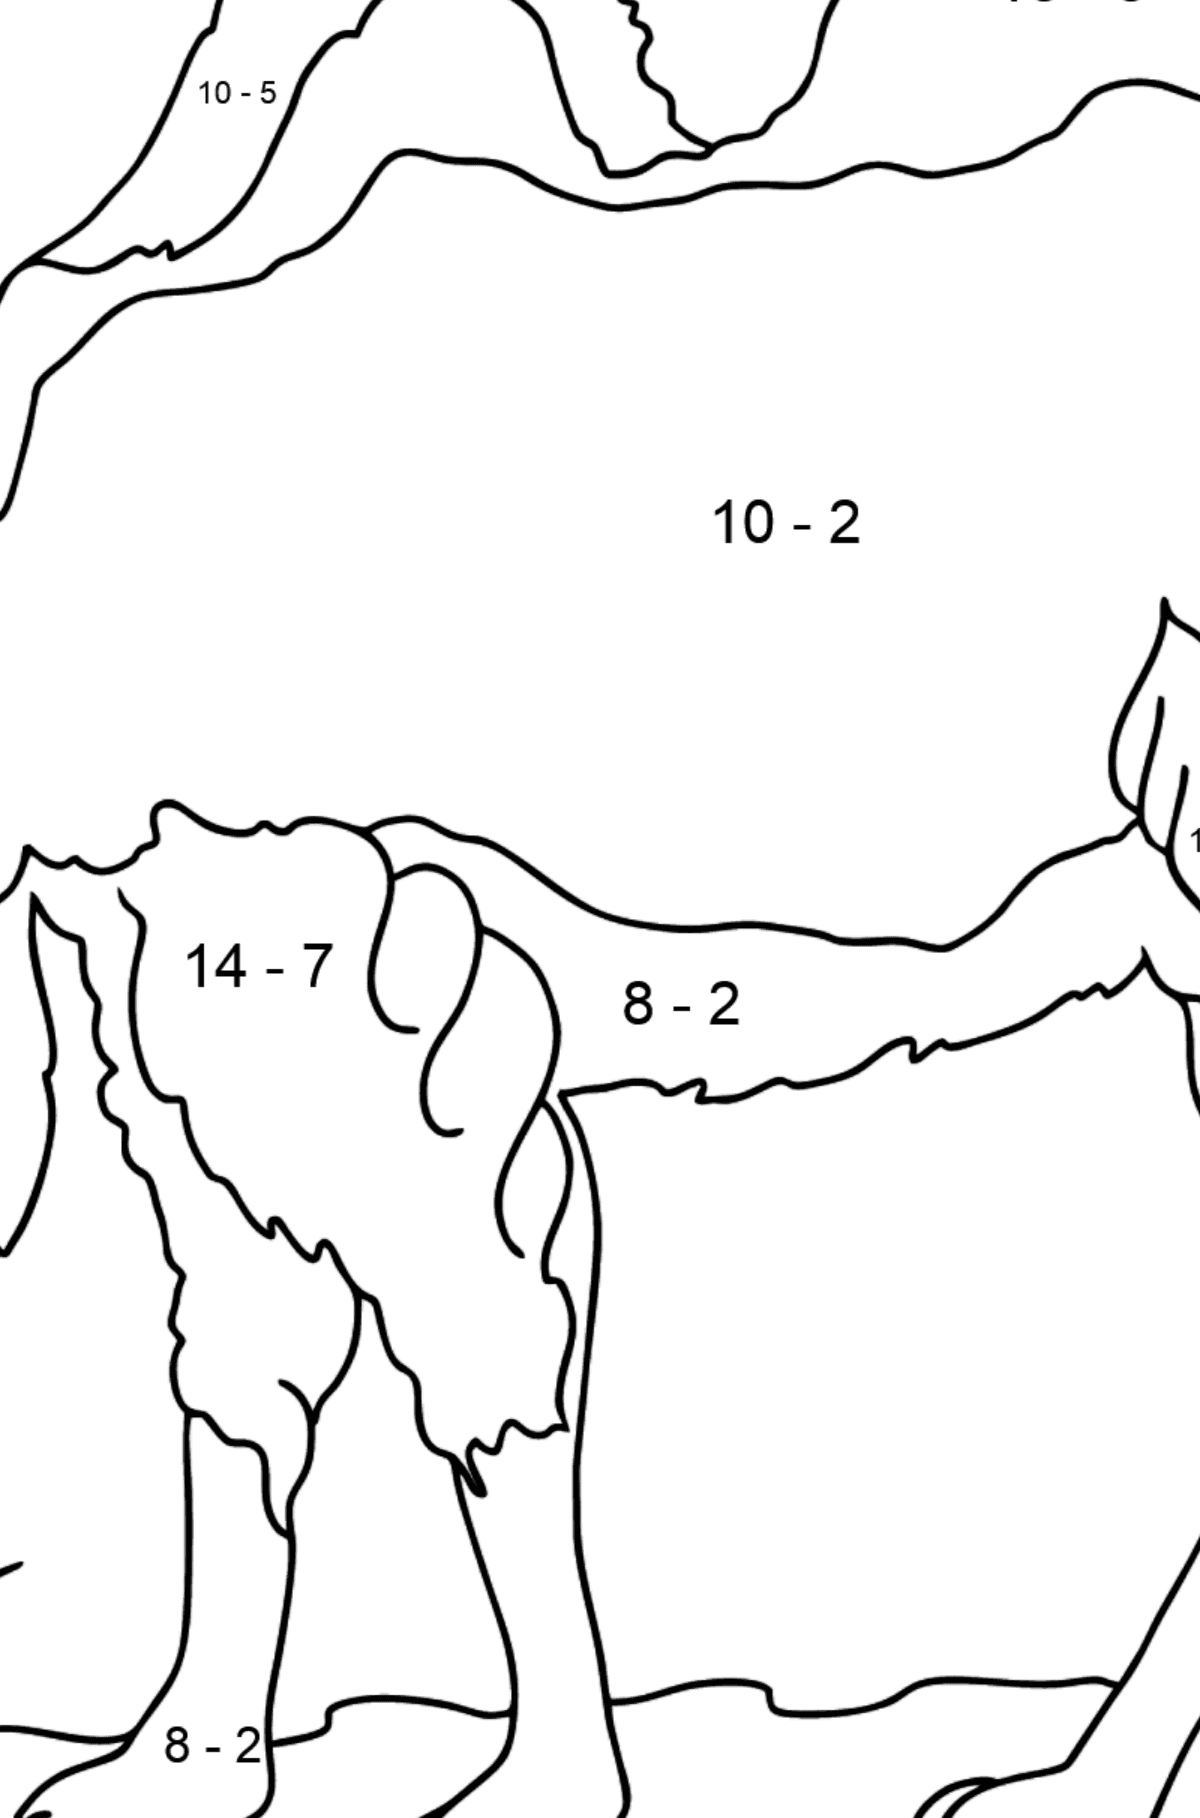 Ausmalbild - Ein Kamel in der Wüste - Mathe Ausmalbilder - Subtraktion für Kinder